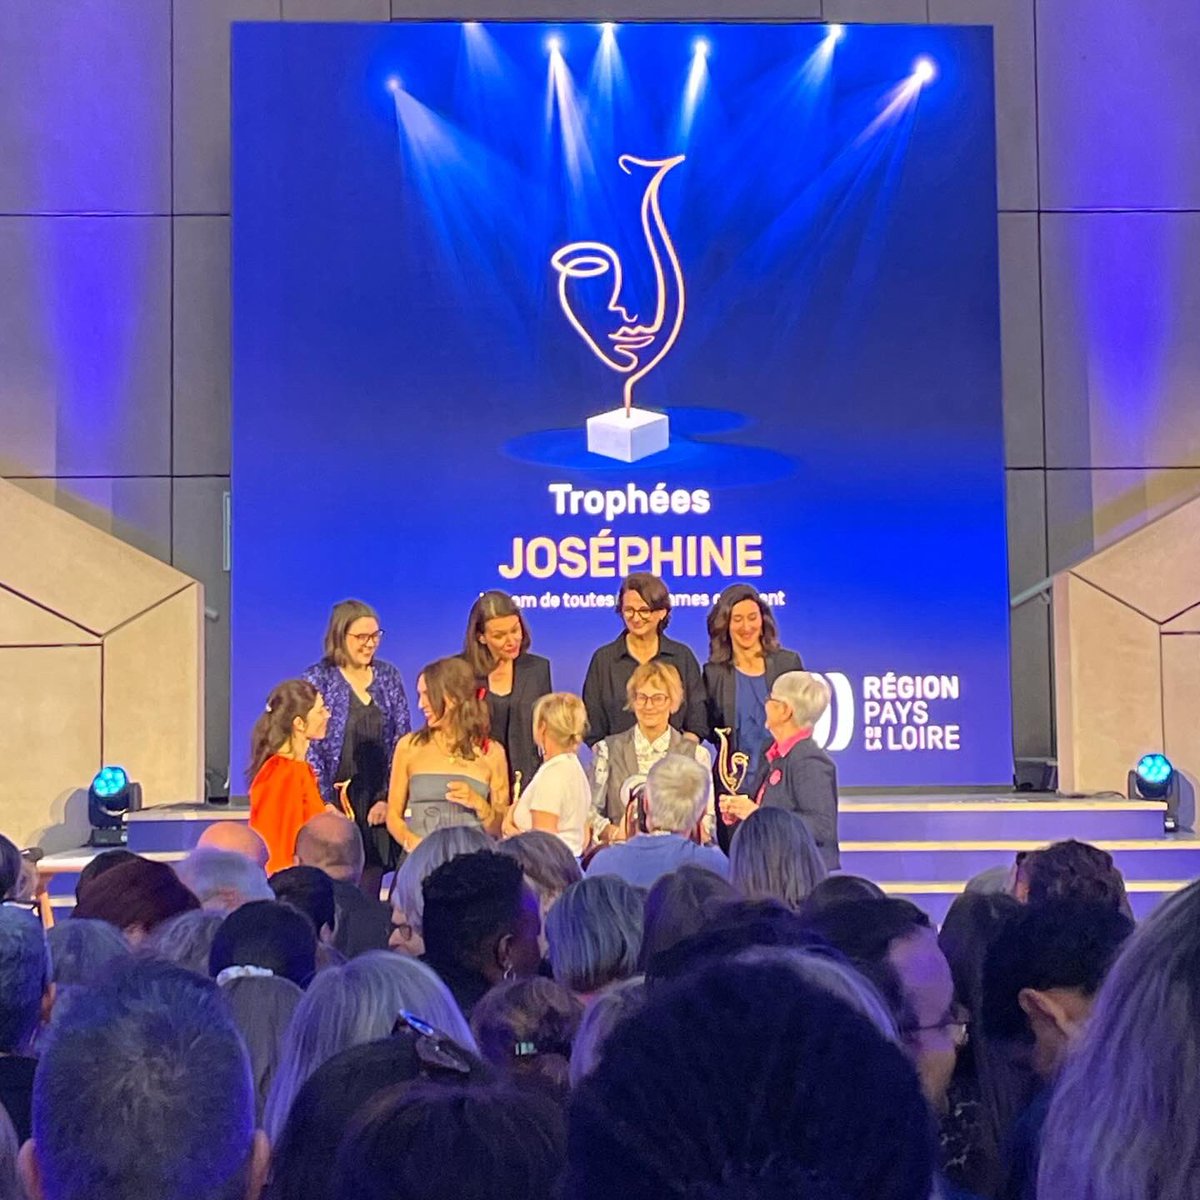 Très belle cérémonie de remise des Trophées Joséphine organisée par la Région des @paysdelaloire. Proche des femmes qui osent, j’adresse mes félicitations aux lauréates de cette troisième édition 👏🏼🏆 #PaysDeLaLoire #TropheesJosephine #Josephine #Nantes